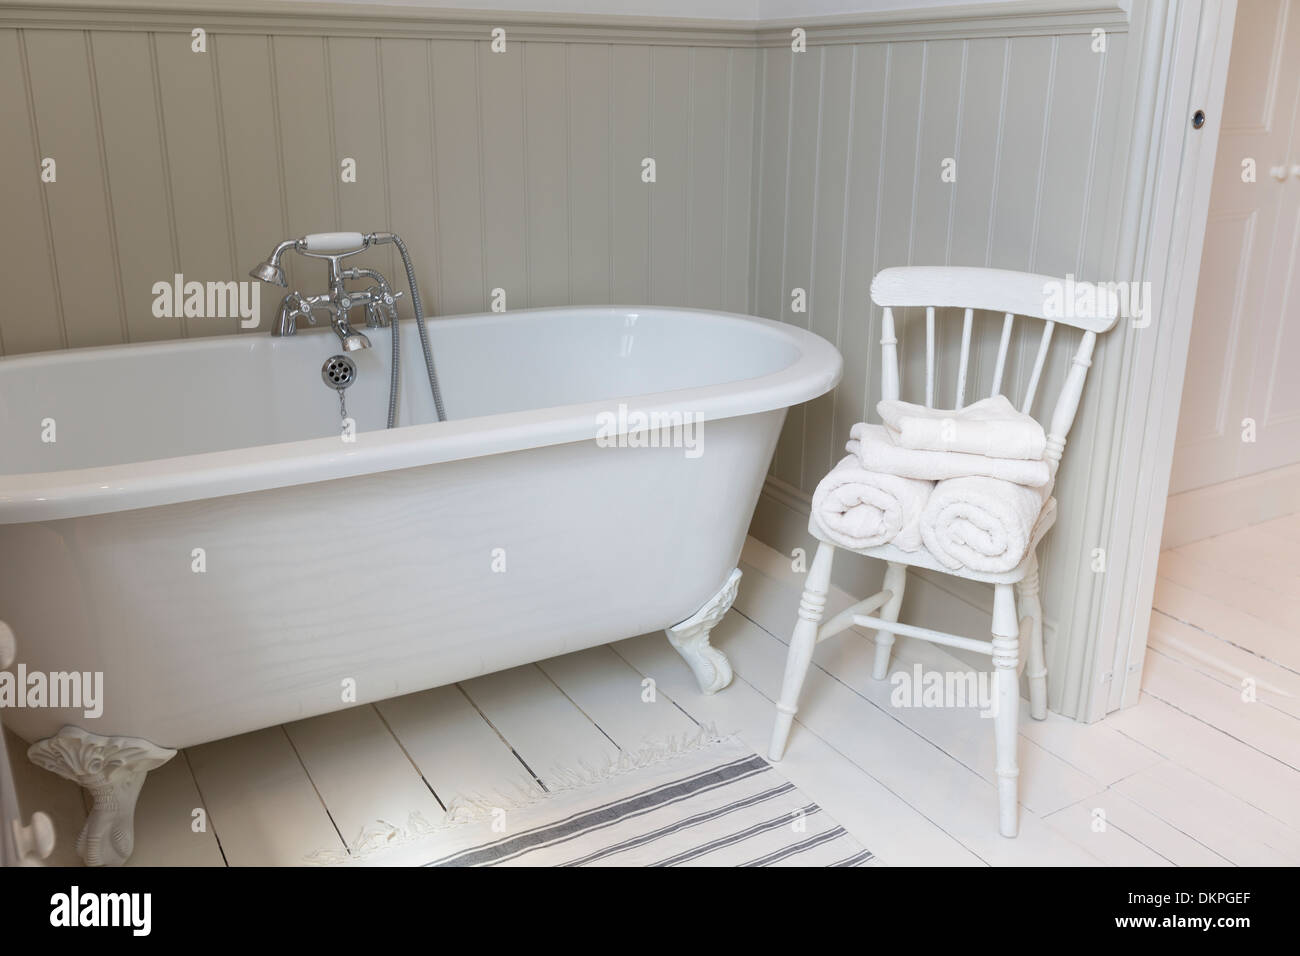 Une baignoire et une chaise dans une salle de bains privative ornée Banque D'Images